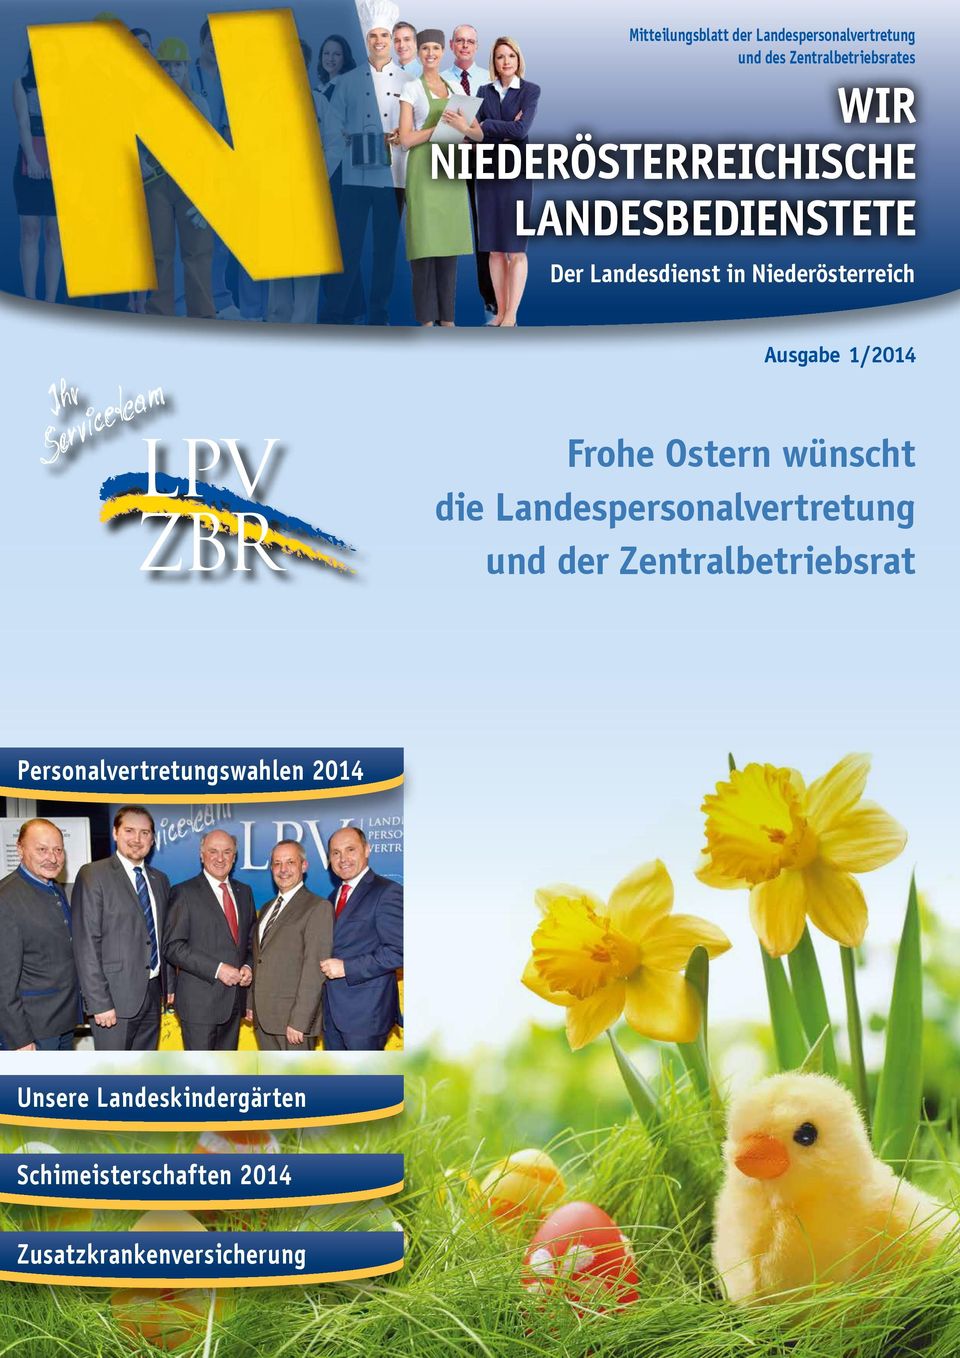 1/2014 Frohe Ostern wünscht die Landespersonalvertretung und der Zentralbetriebsrat